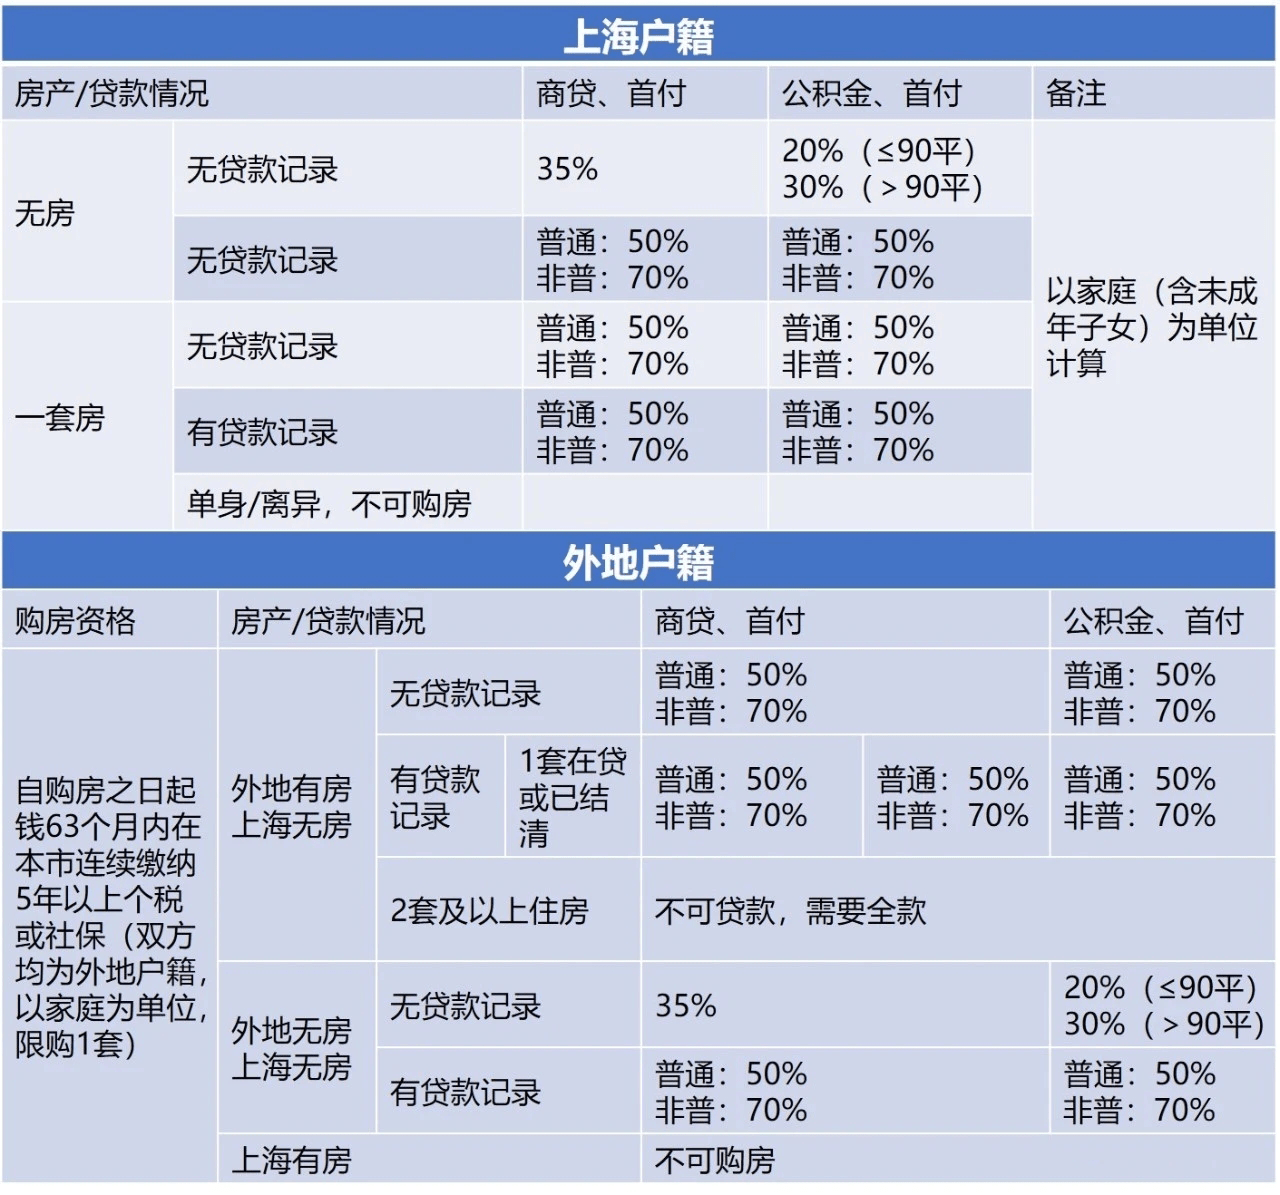 二套房首付比例上海_上海二套房首付比例2015年_二套房上海首付比例